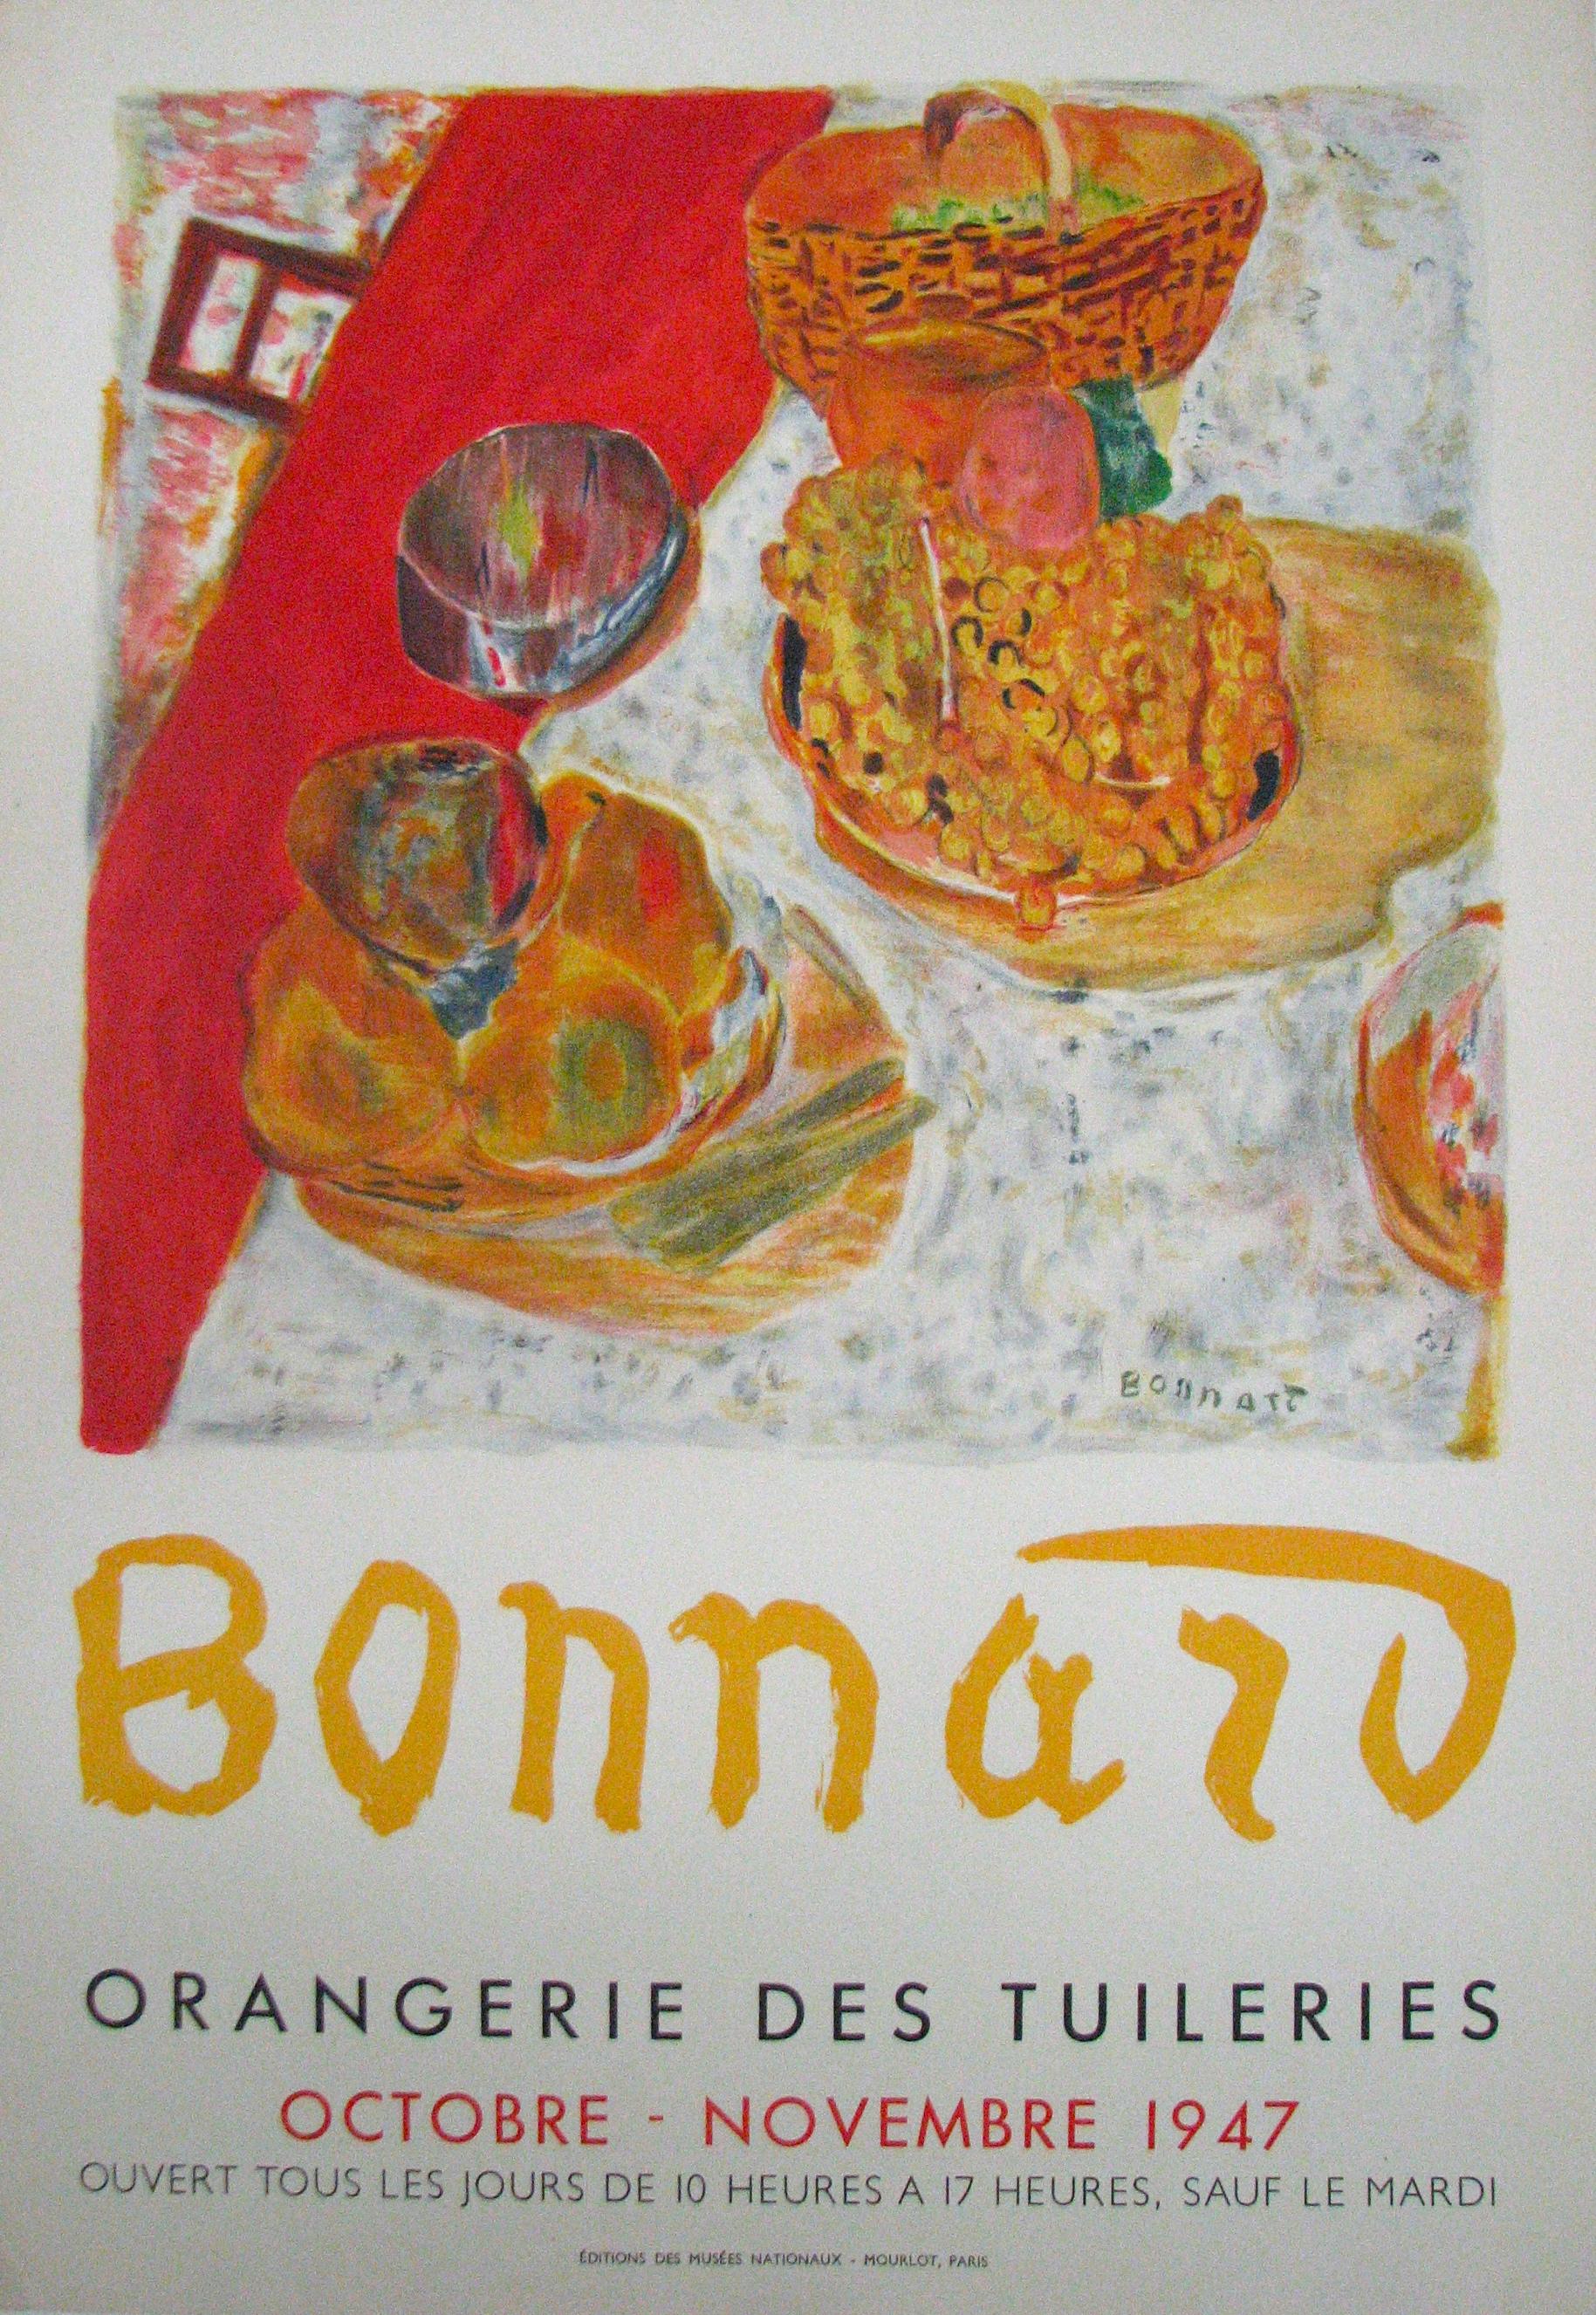 (after) Pierre Bonnard Still-Life Print – Orangerie Des Tuileries (nach) Pierre Bonnard, 1947